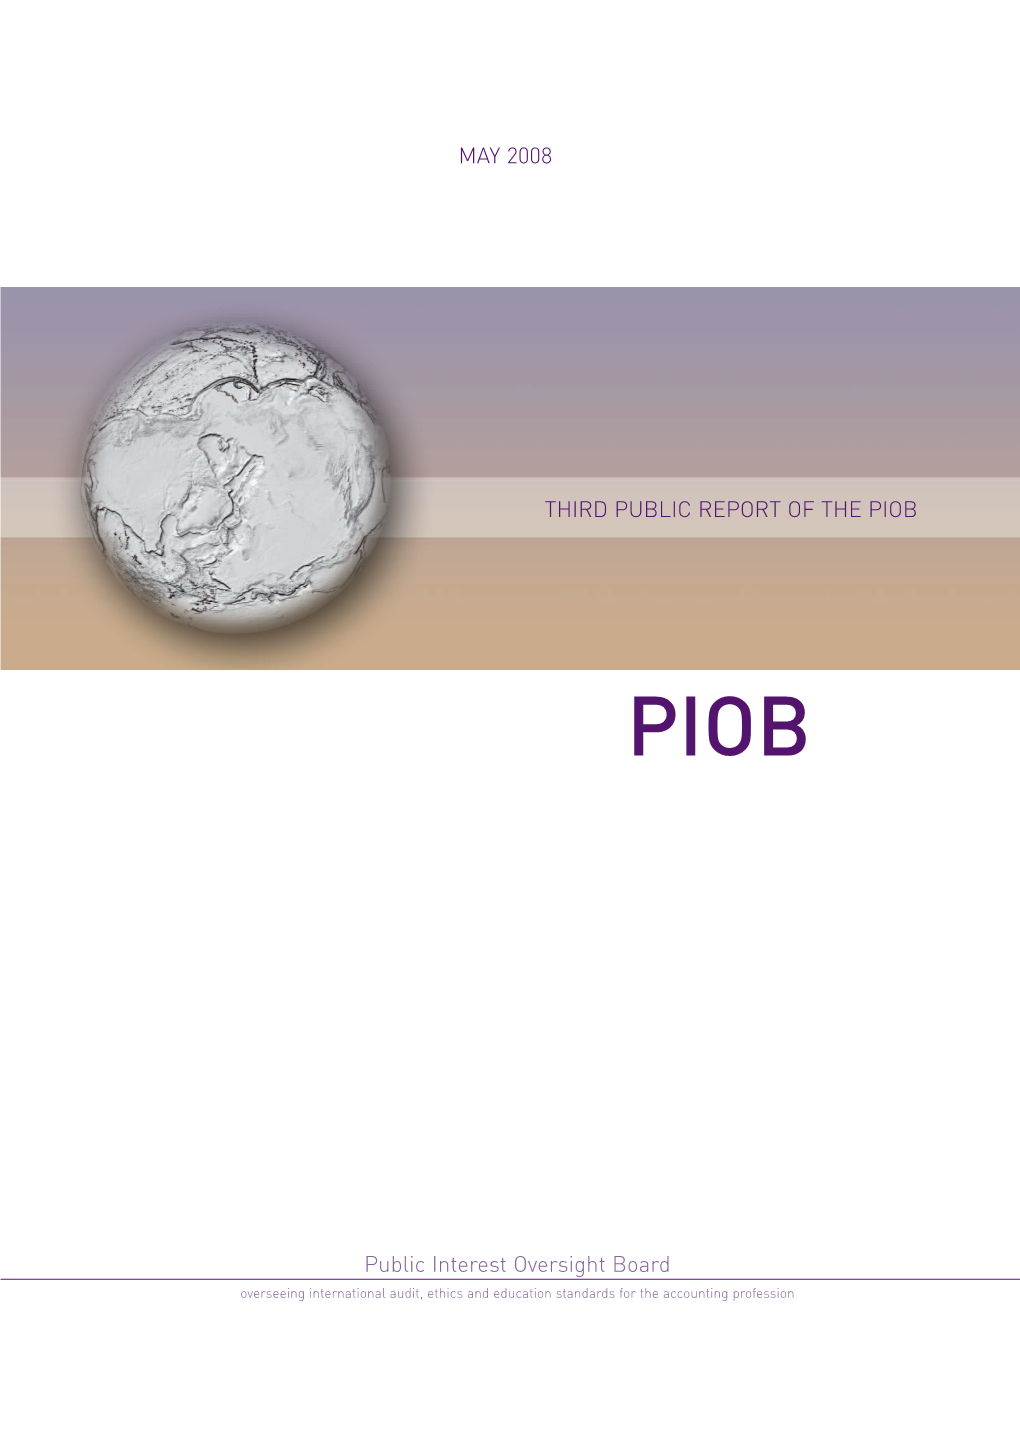 Third Public Report of the Piob